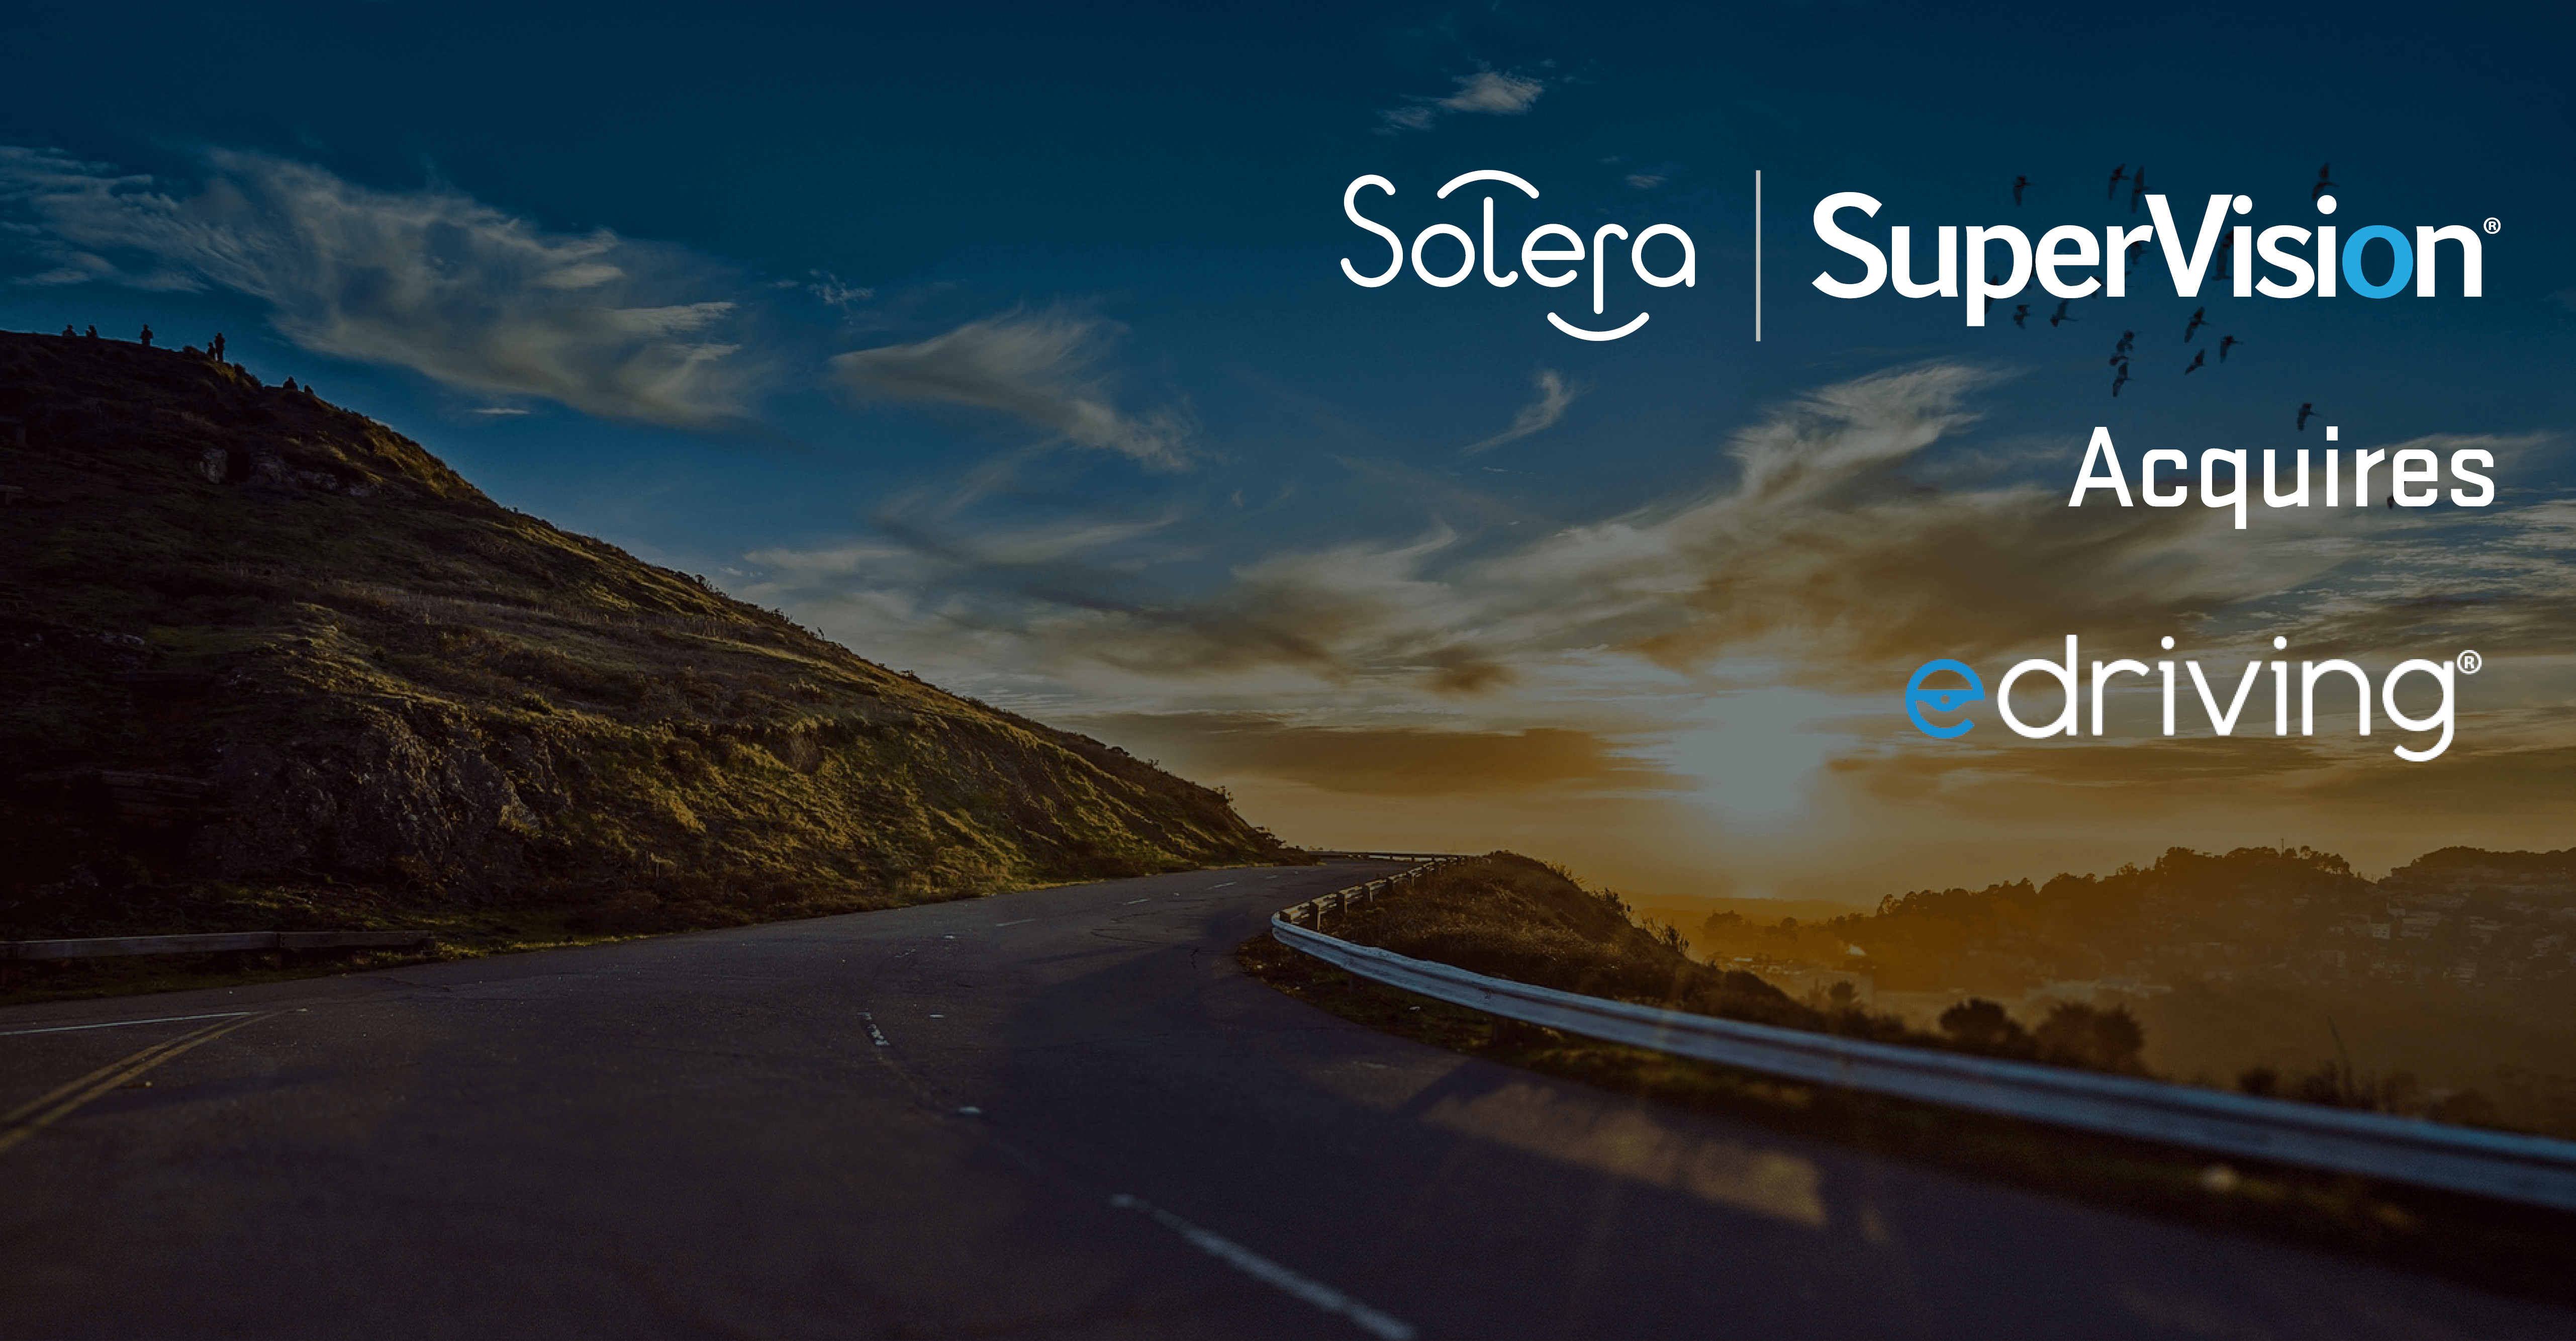 Solera | SuperVision acquires eDriving